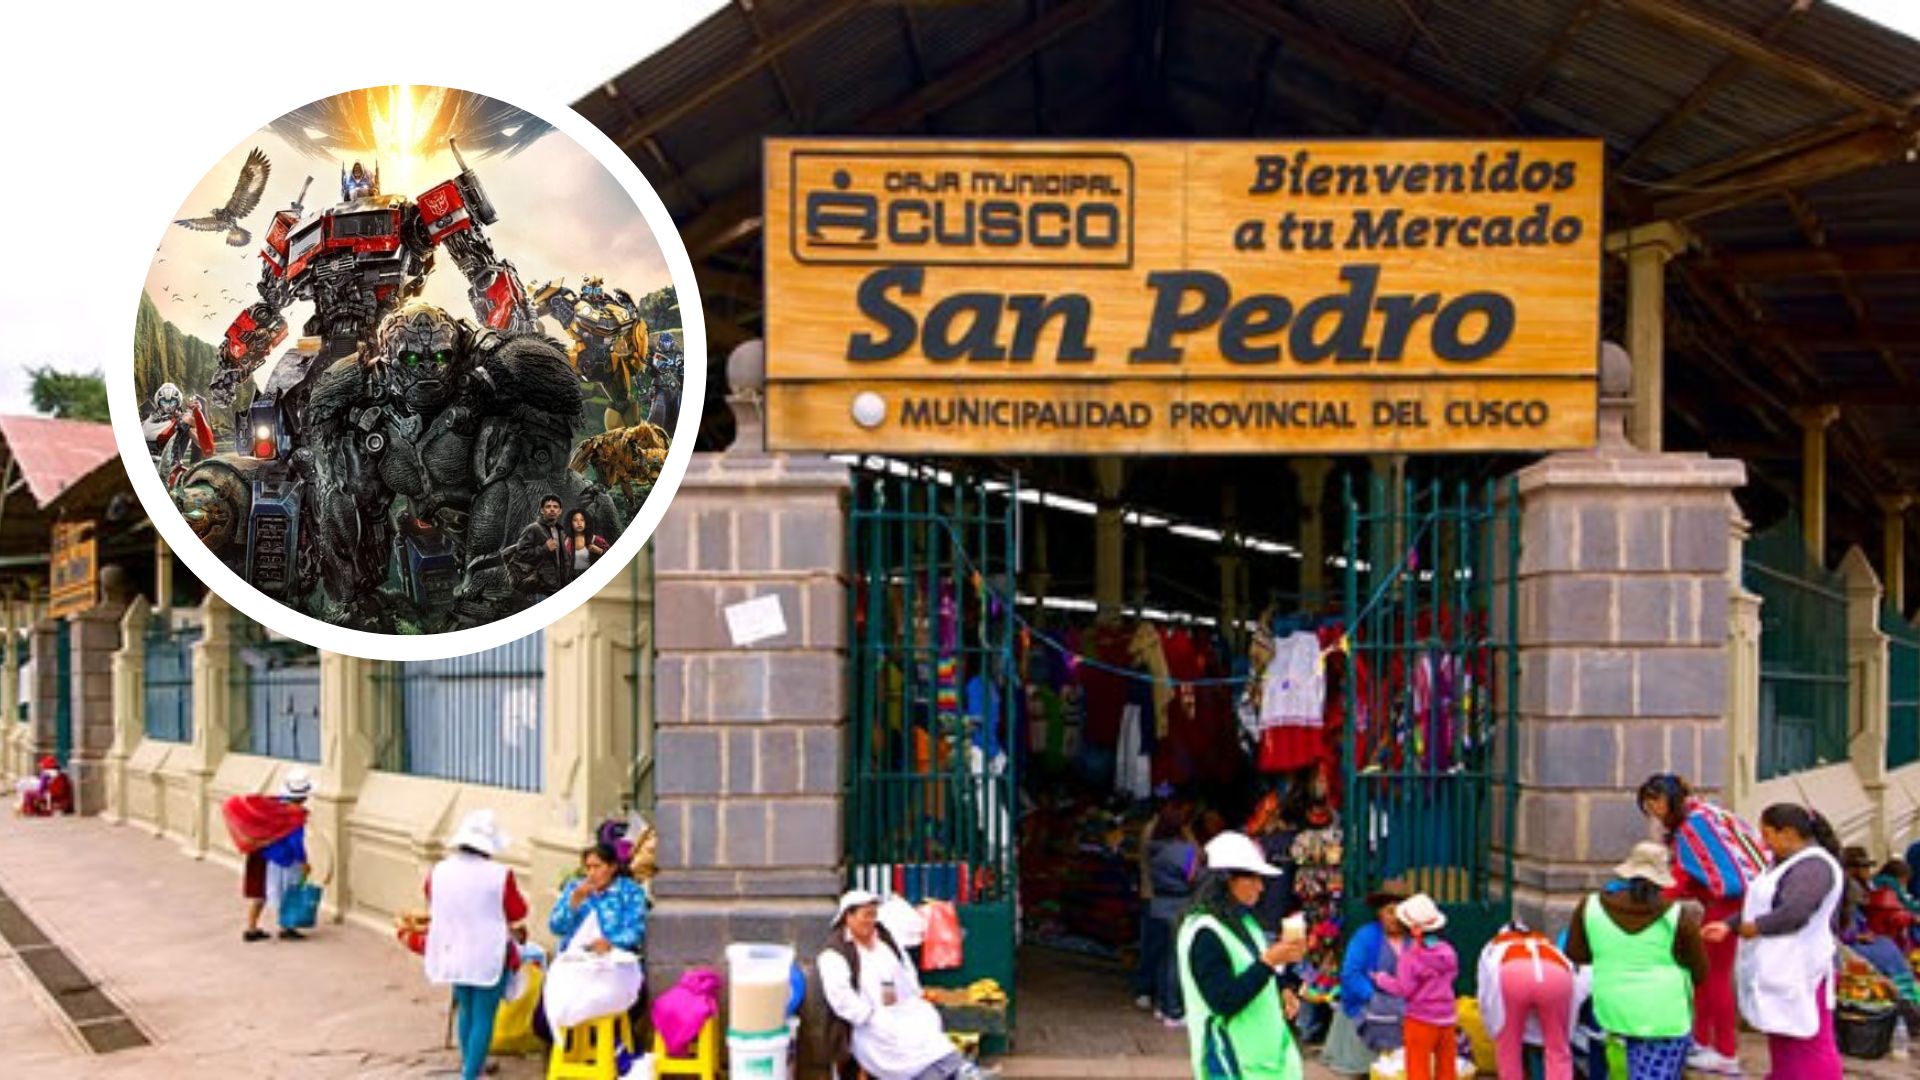 Desaparecieron 15 mil dólares que dio producción de ‘Transformers 7’ a mercado San Pedro de Cusco: directiva responsable permanece en la sombra 